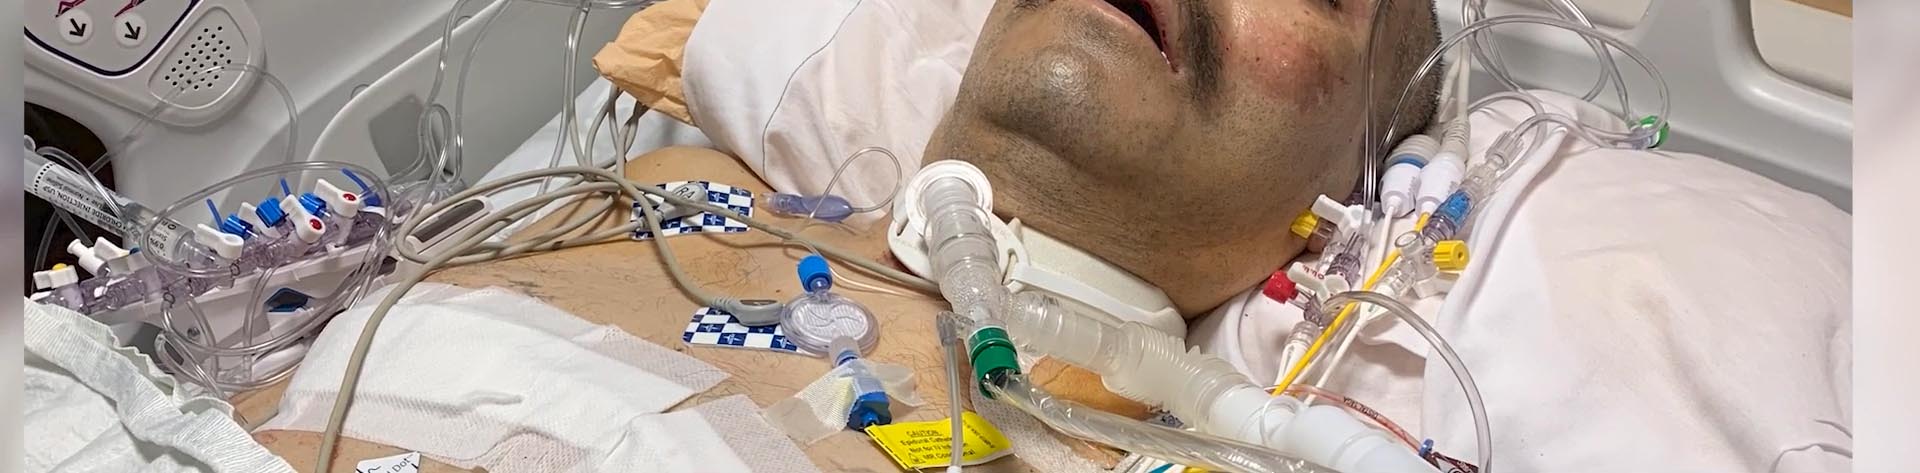 जोस ग्रासियानो अपने अस्पताल के बिस्तर पर, कोविड से उबर रहे हैं